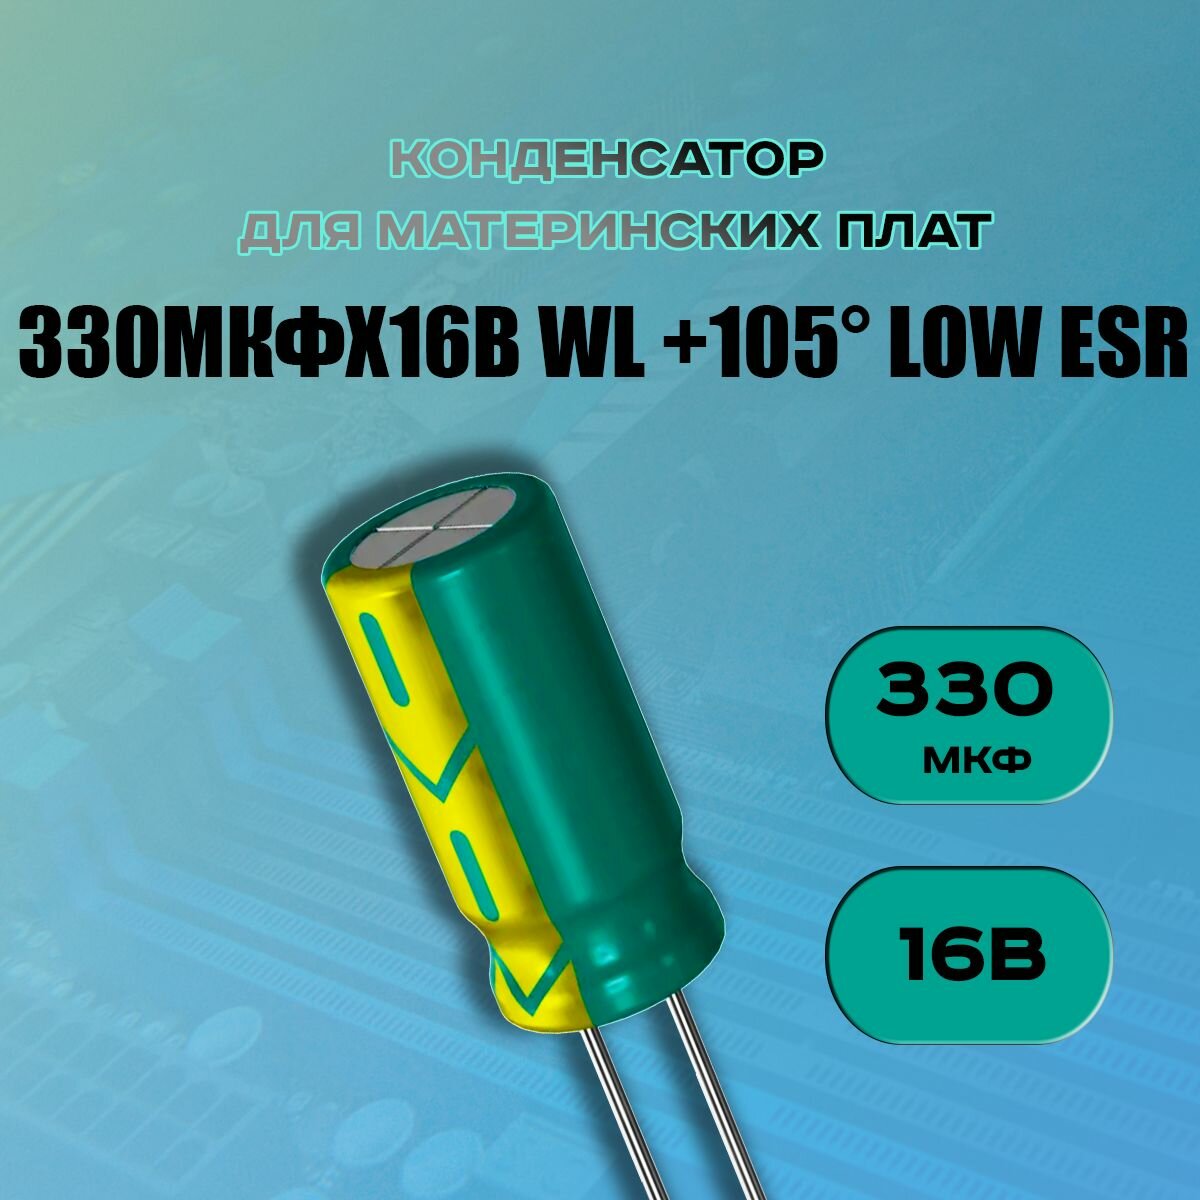 Конденсатор для материнской платы 330 микрофарат 16 Вольт (330uf 16V WL +105 LOW ESR) - 1 шт.